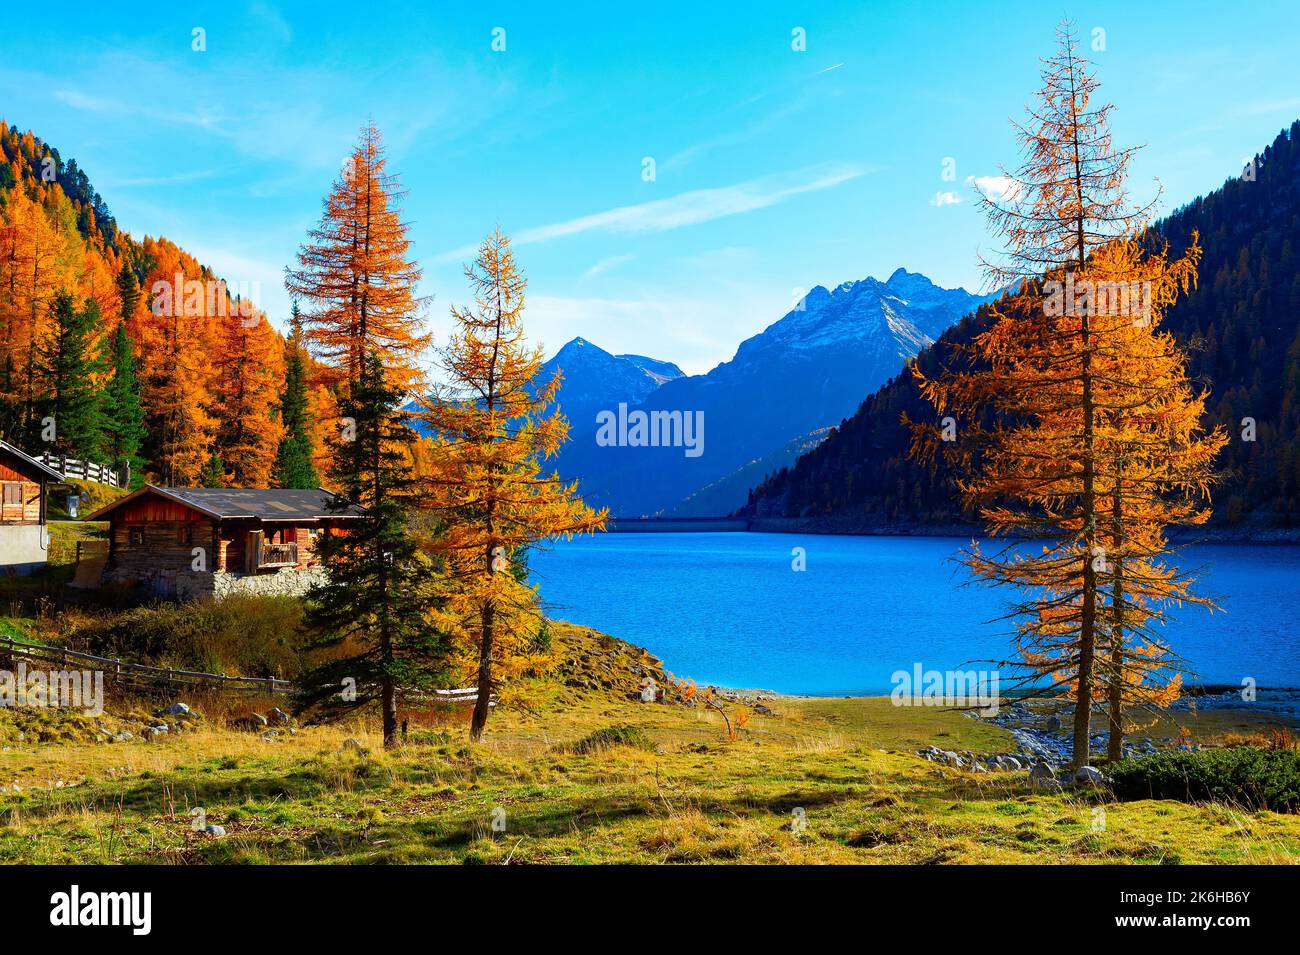 Paysage d'automne coloré avec des huttes au bord du lac, des arbres dorés et des montagnes des Alpes en arrière-plan, Autriche Banque D'Images